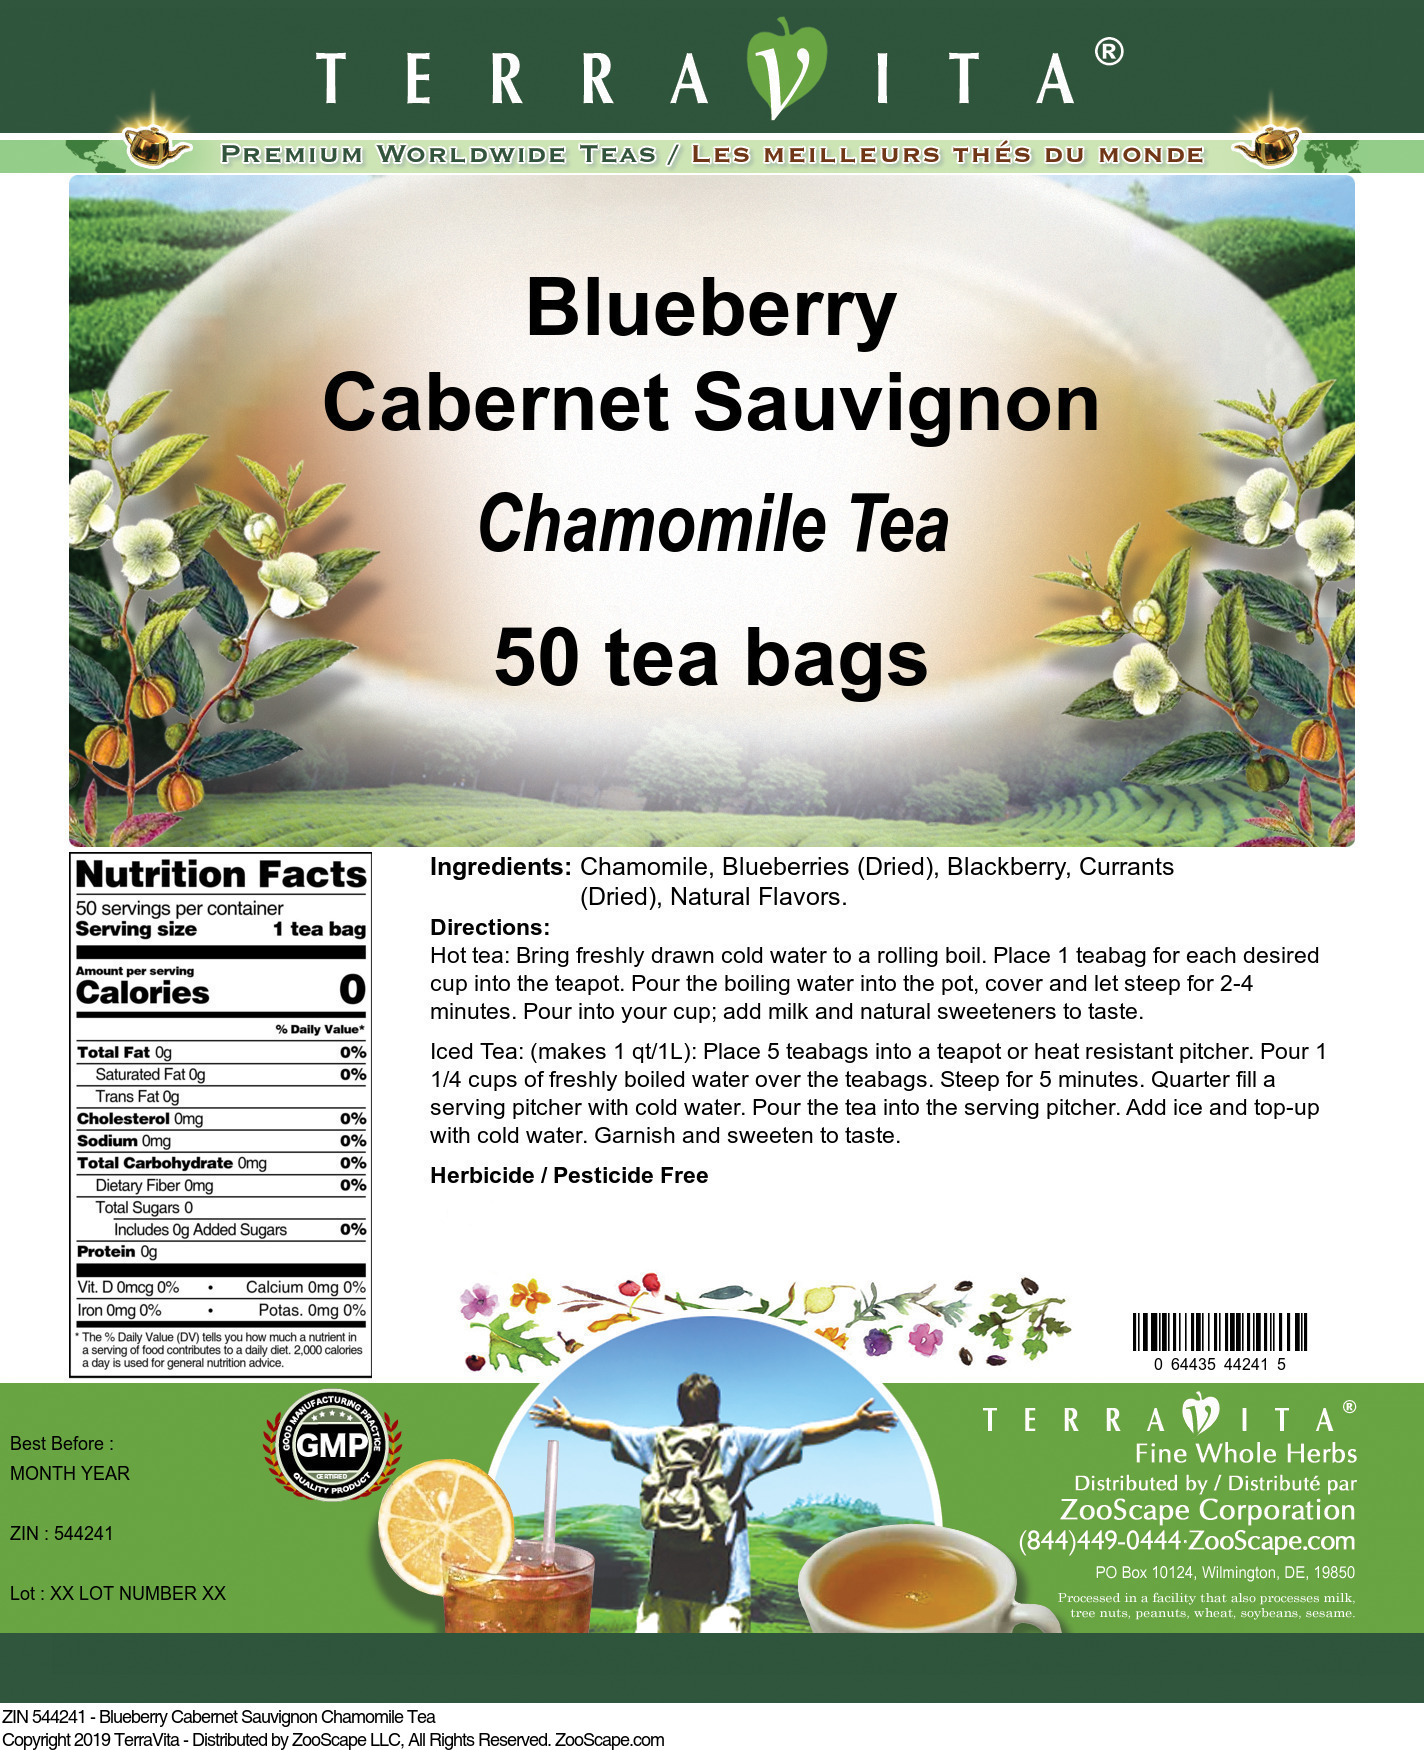 Blueberry Cabernet Sauvignon Chamomile Tea - Label